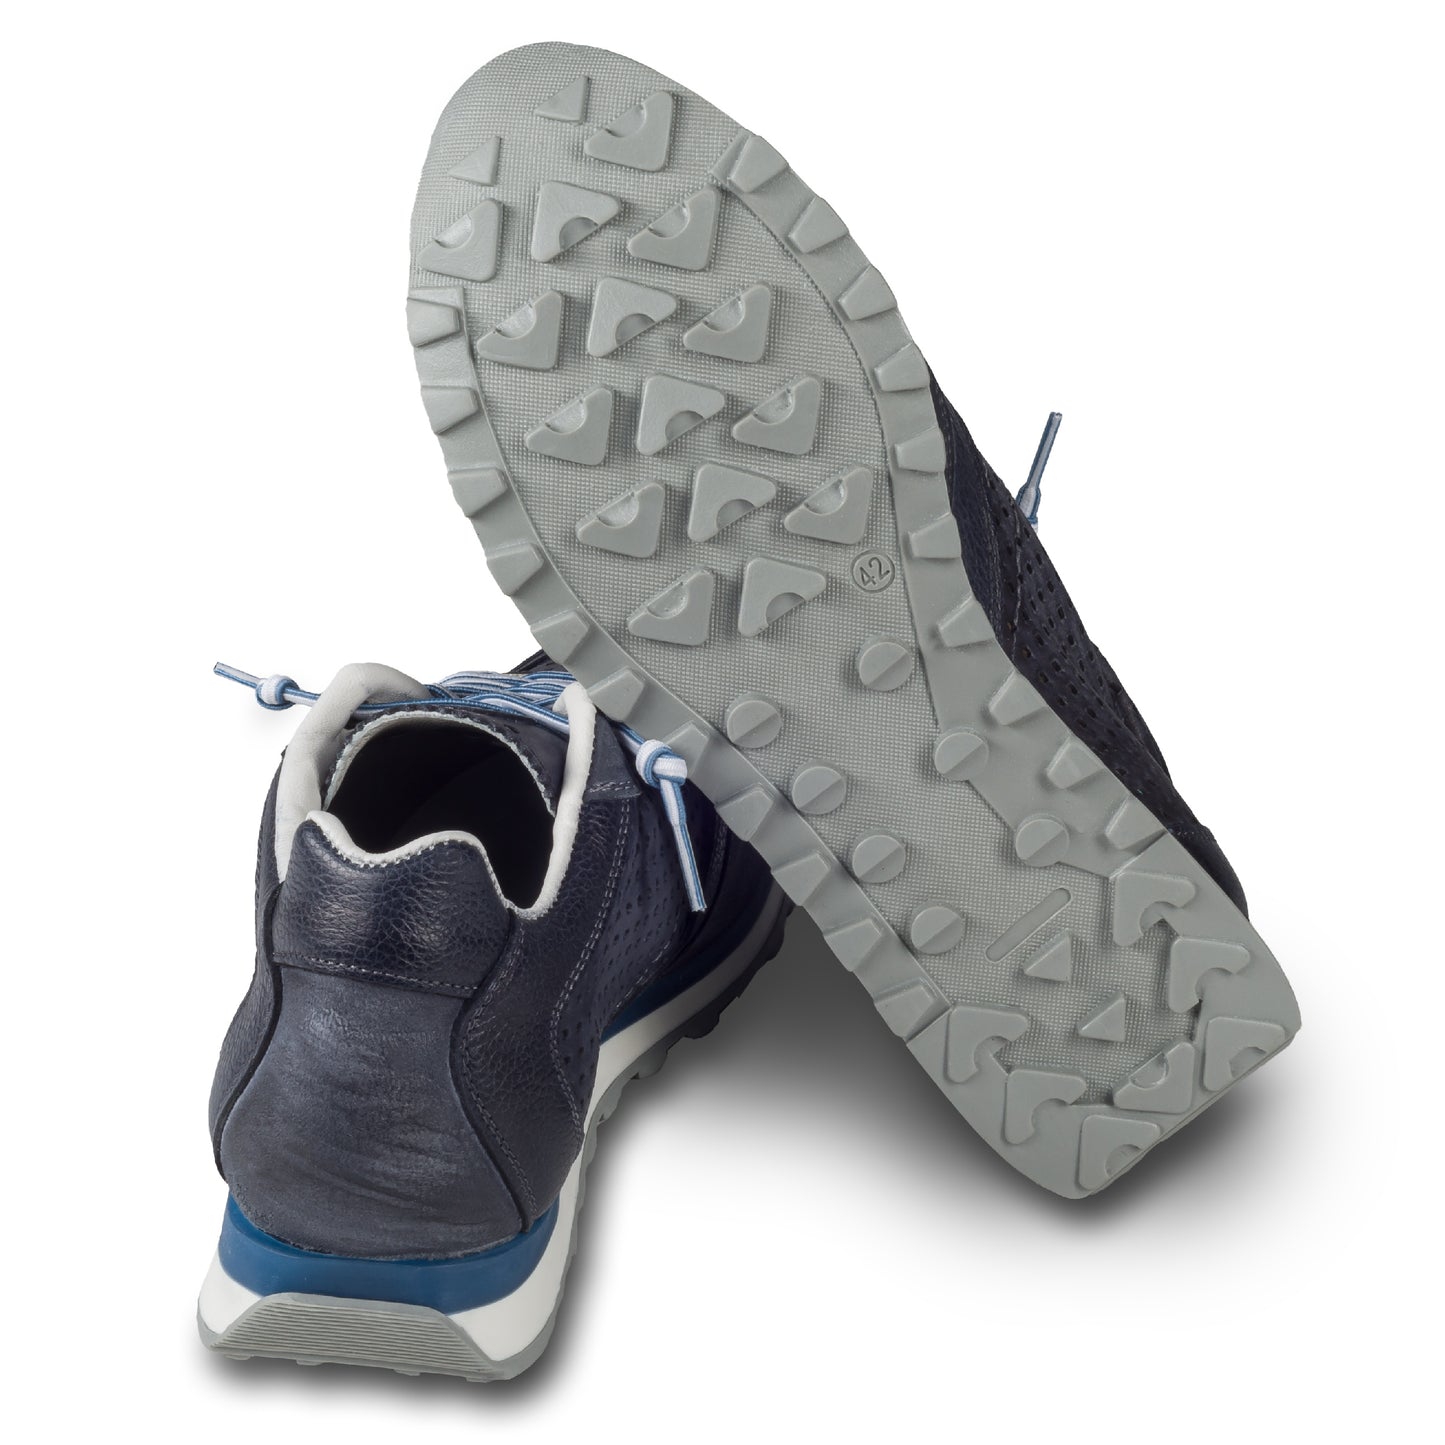 CETTI Herren Leder Sneaker, Modell „C848“ in dunkel blau / grau (used tin antracite), Made in Spain. Ansicht der Ferse und Sohlenunterseite. Ansicht der Ferse und Sohlenunterseite. 